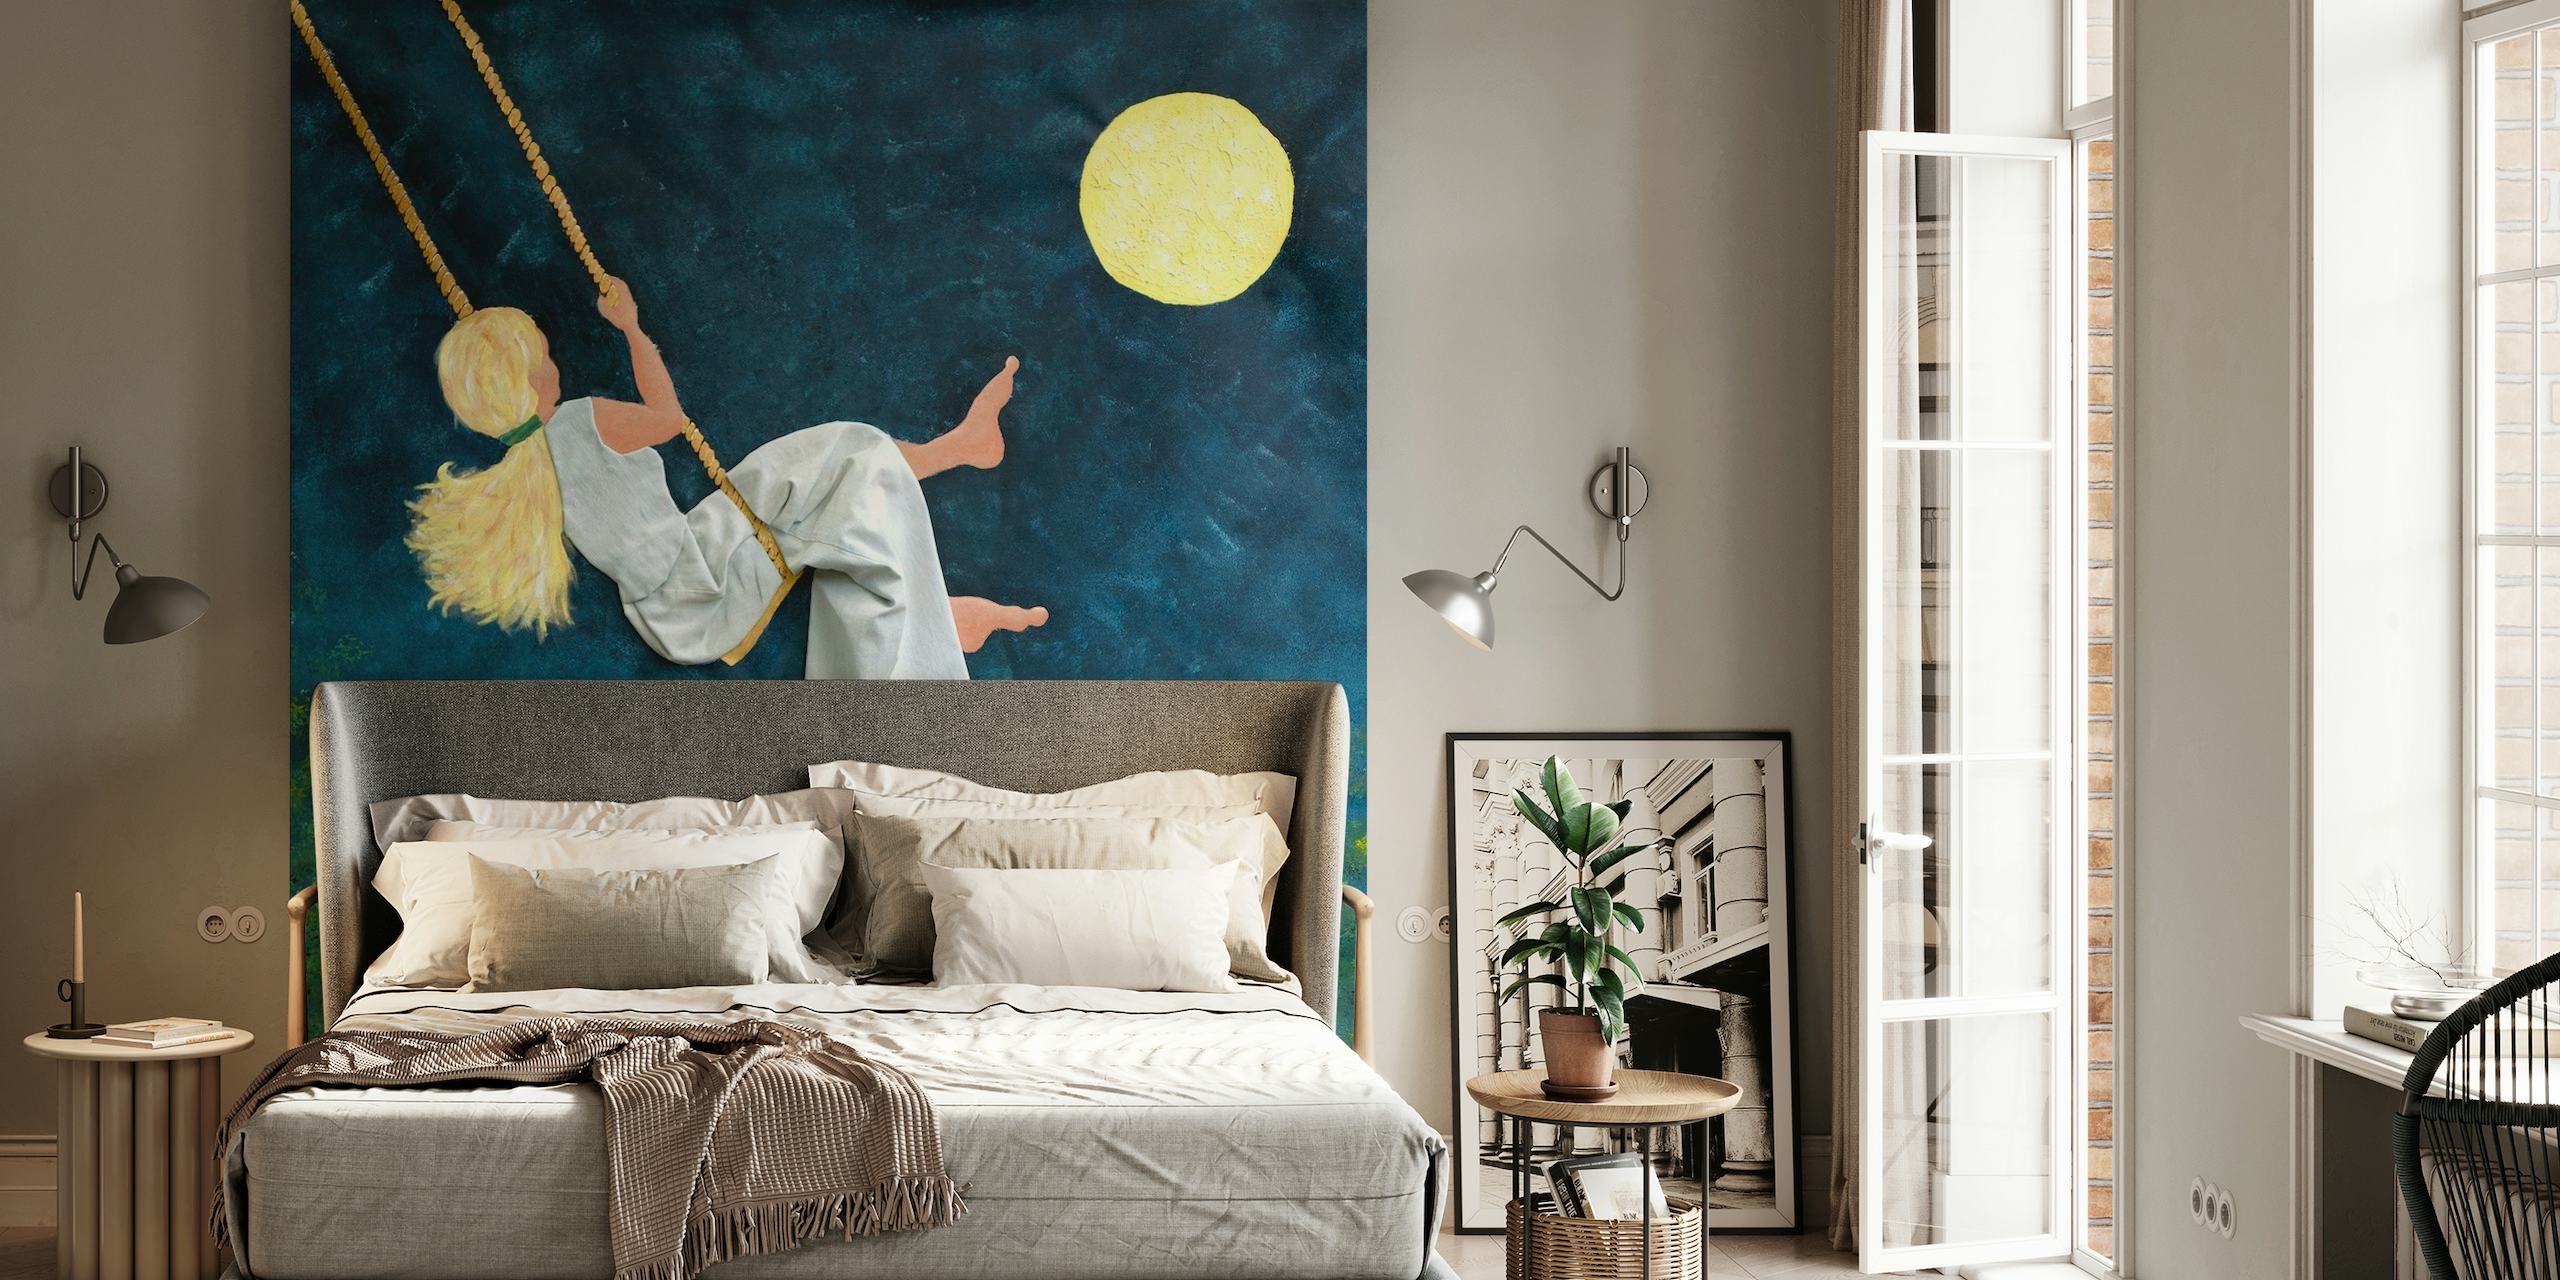 Pige, der svinger mod månen på et stjerneklar nat vægmaleri